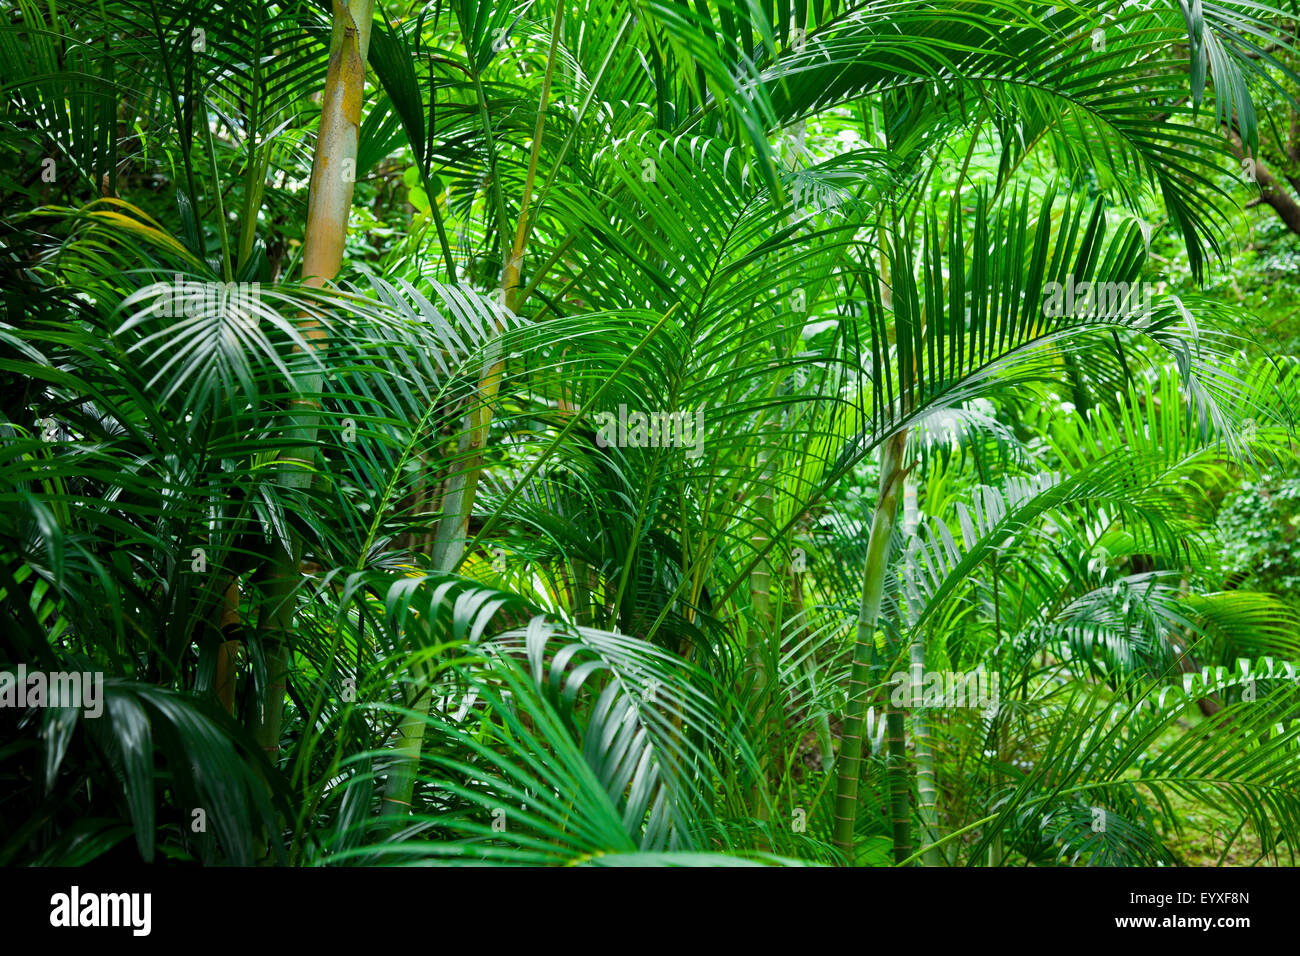 dschungel palmen tropischen baum grünen üppigen grunen